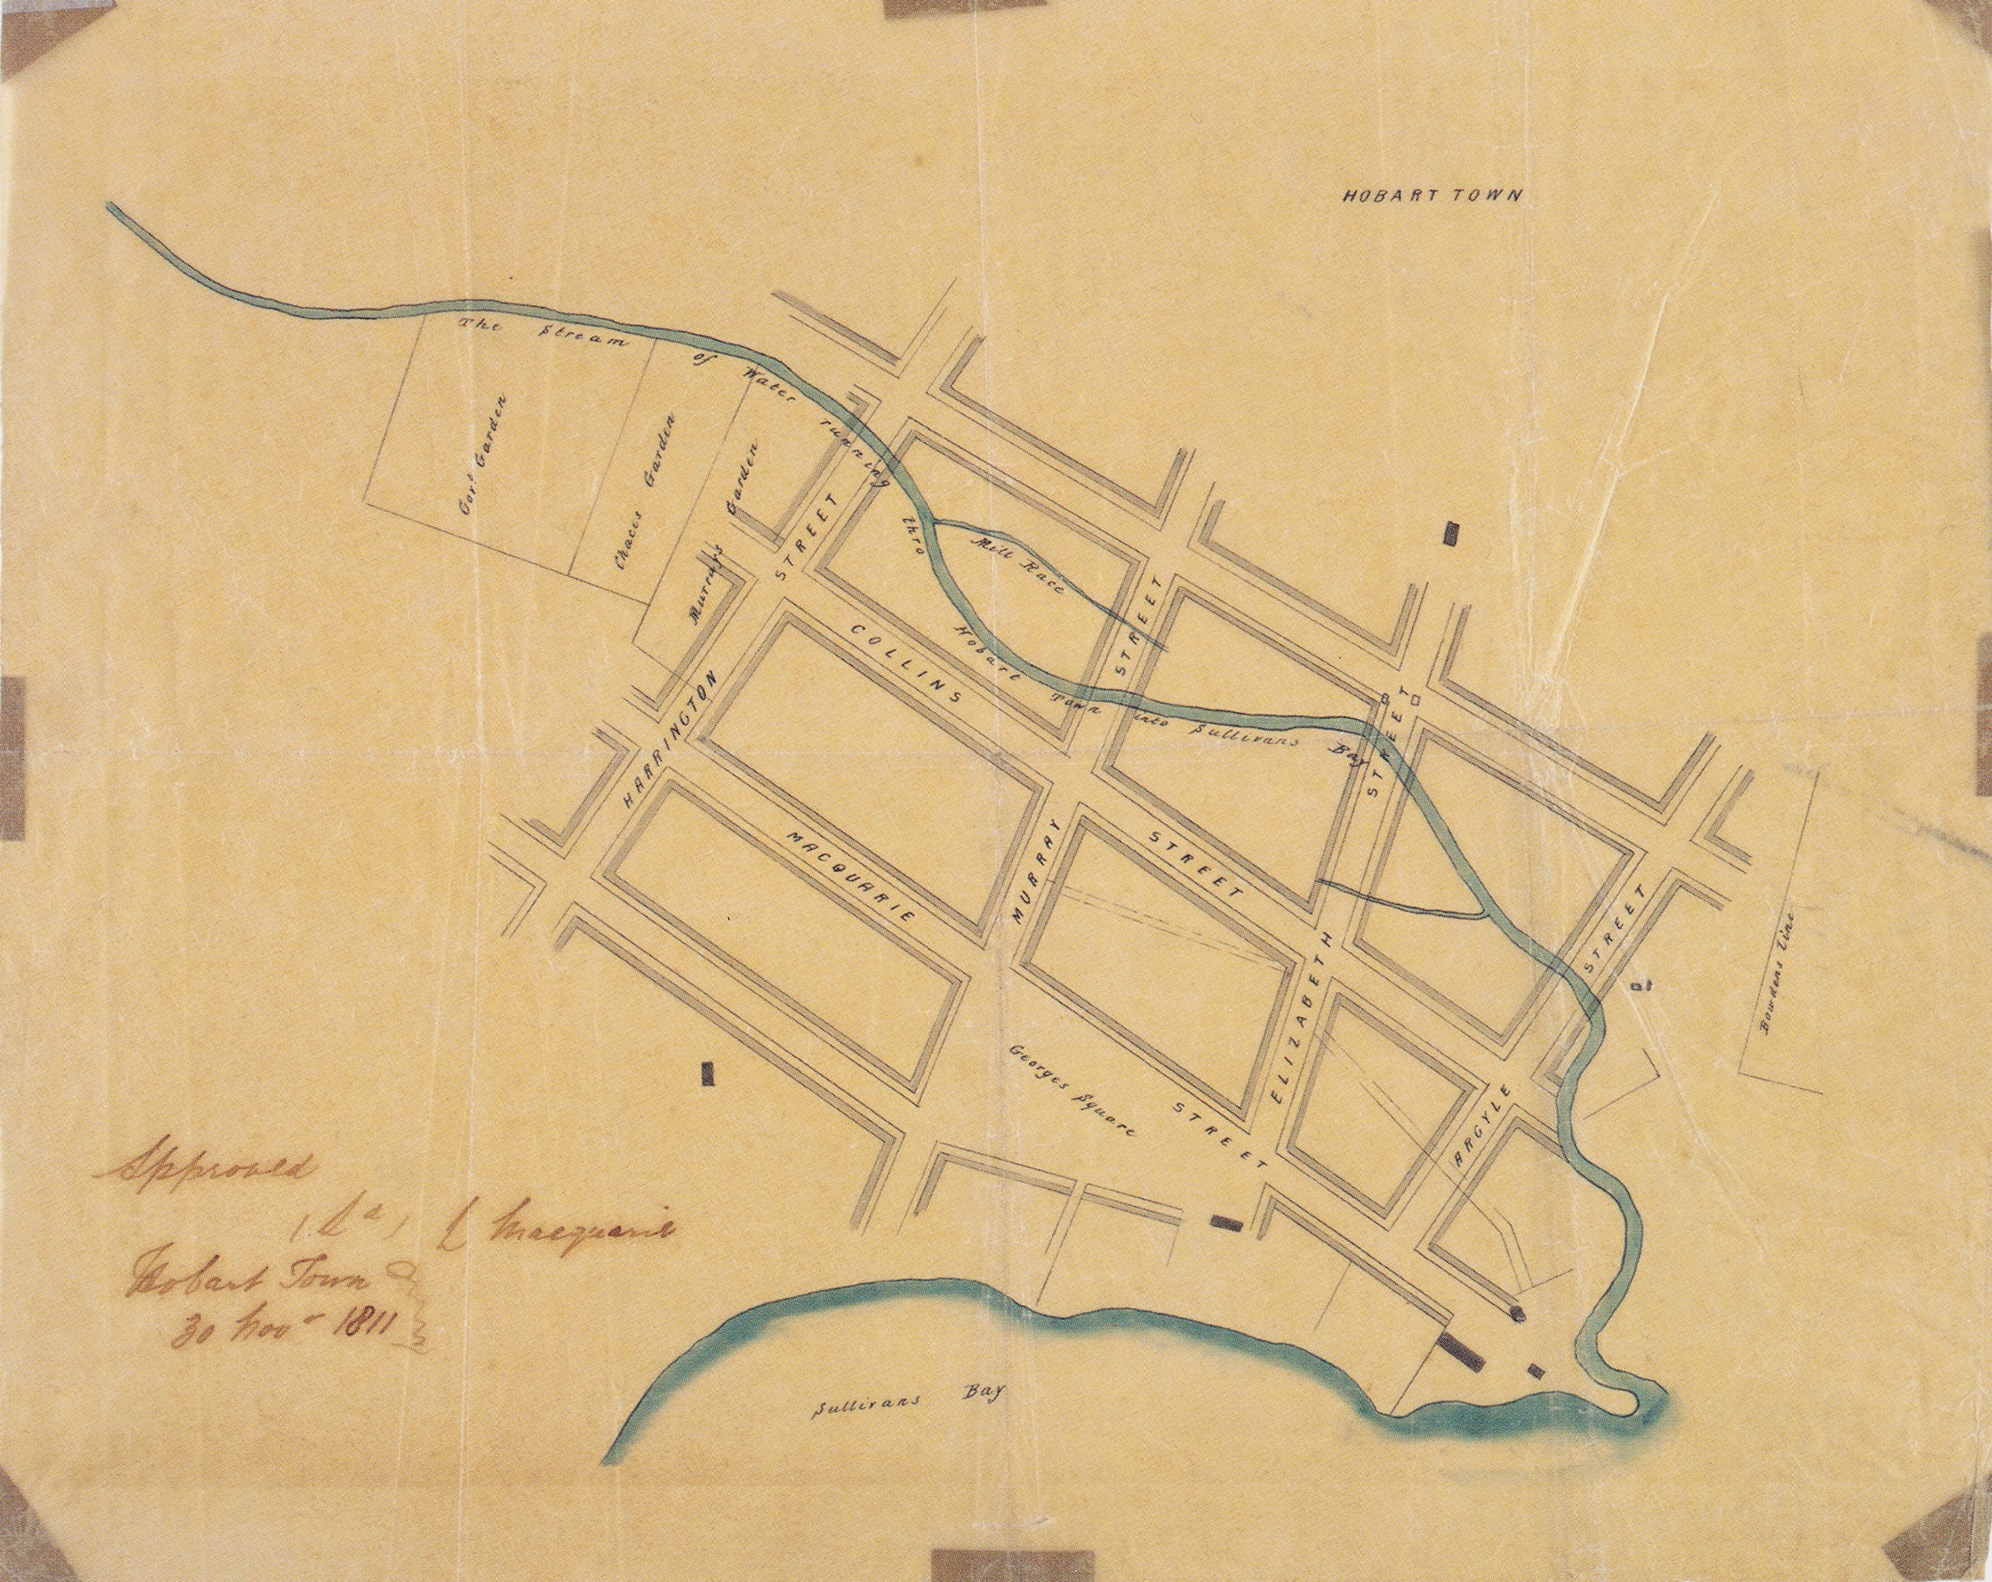 Plan of Hobart Town 1811 – James Meehan